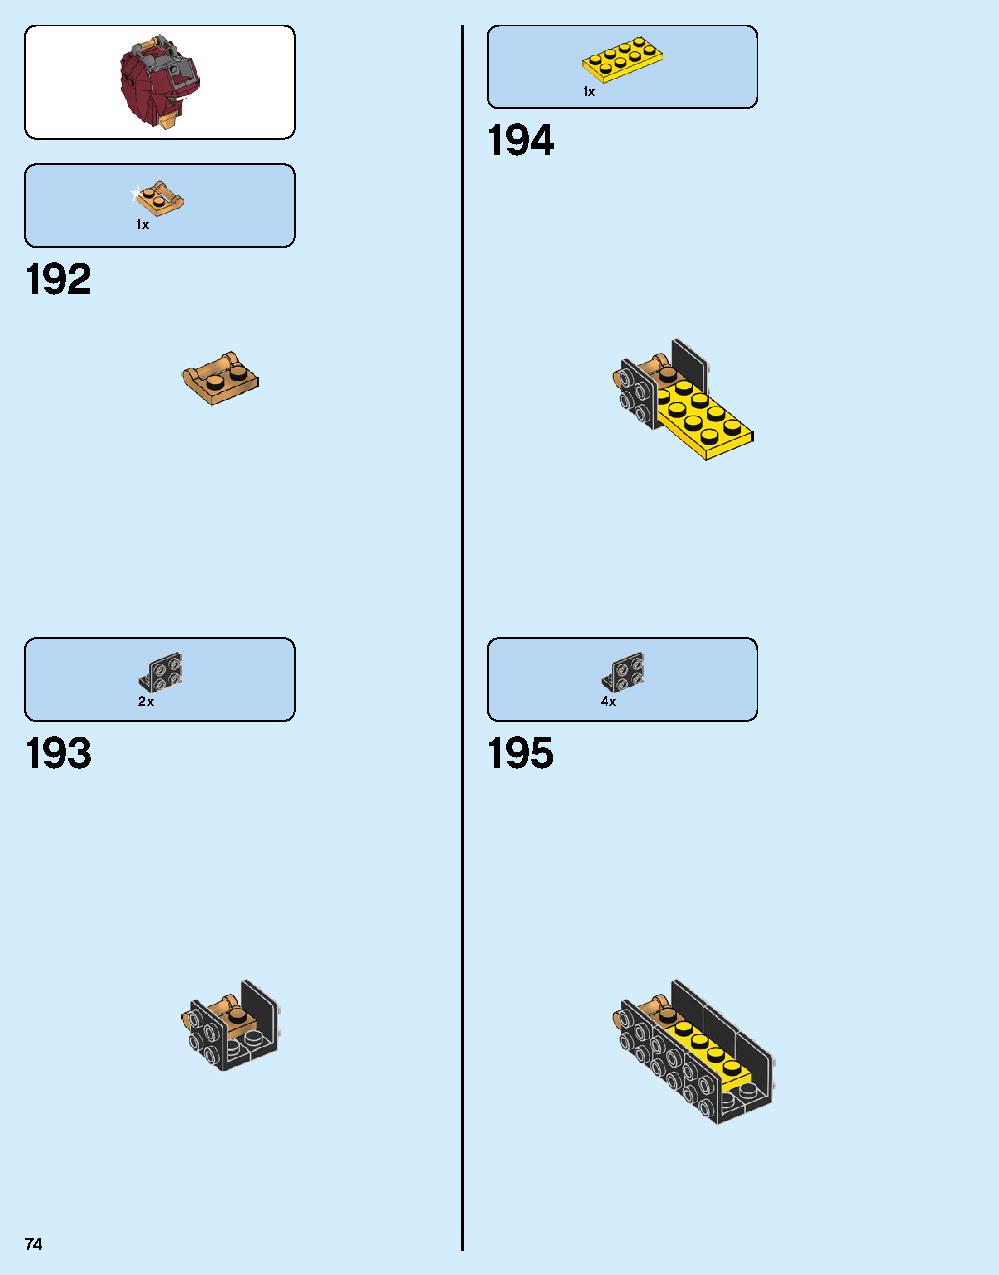 ハルクバスター：ウルトロン・エディション 76105 レゴの商品情報 レゴの説明書・組立方法 74 page